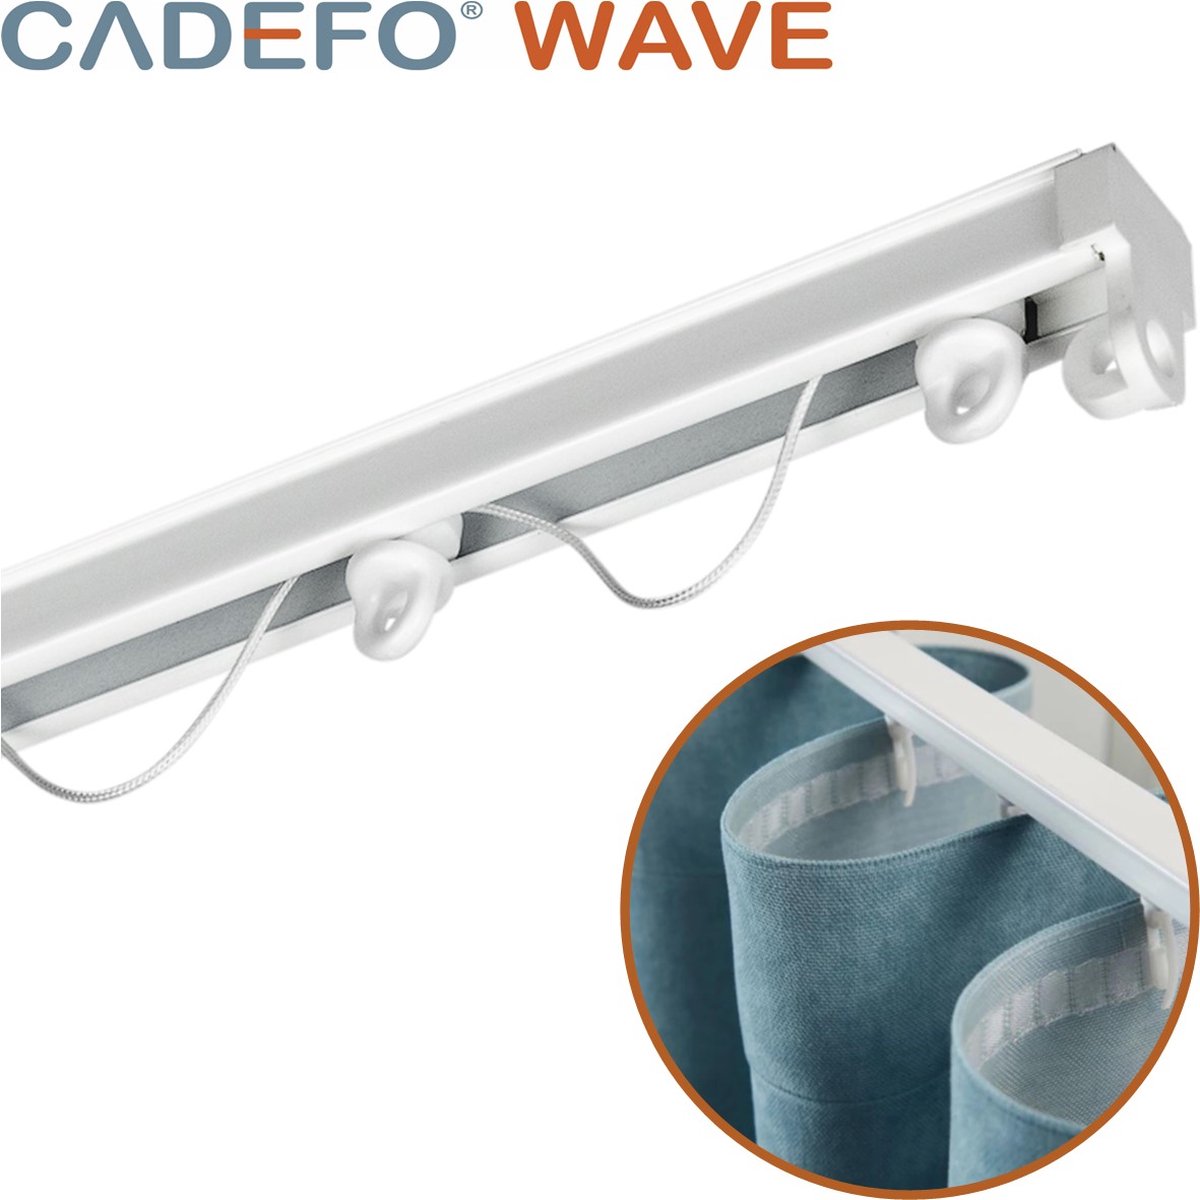 CADEFO WAVE (351 - 400 cm) Gordijnrails - Compleet op maat! - UIT 1 STUK - Leverbaar tot 6 meter - Plafondbevestiging - Lengte 371 cm